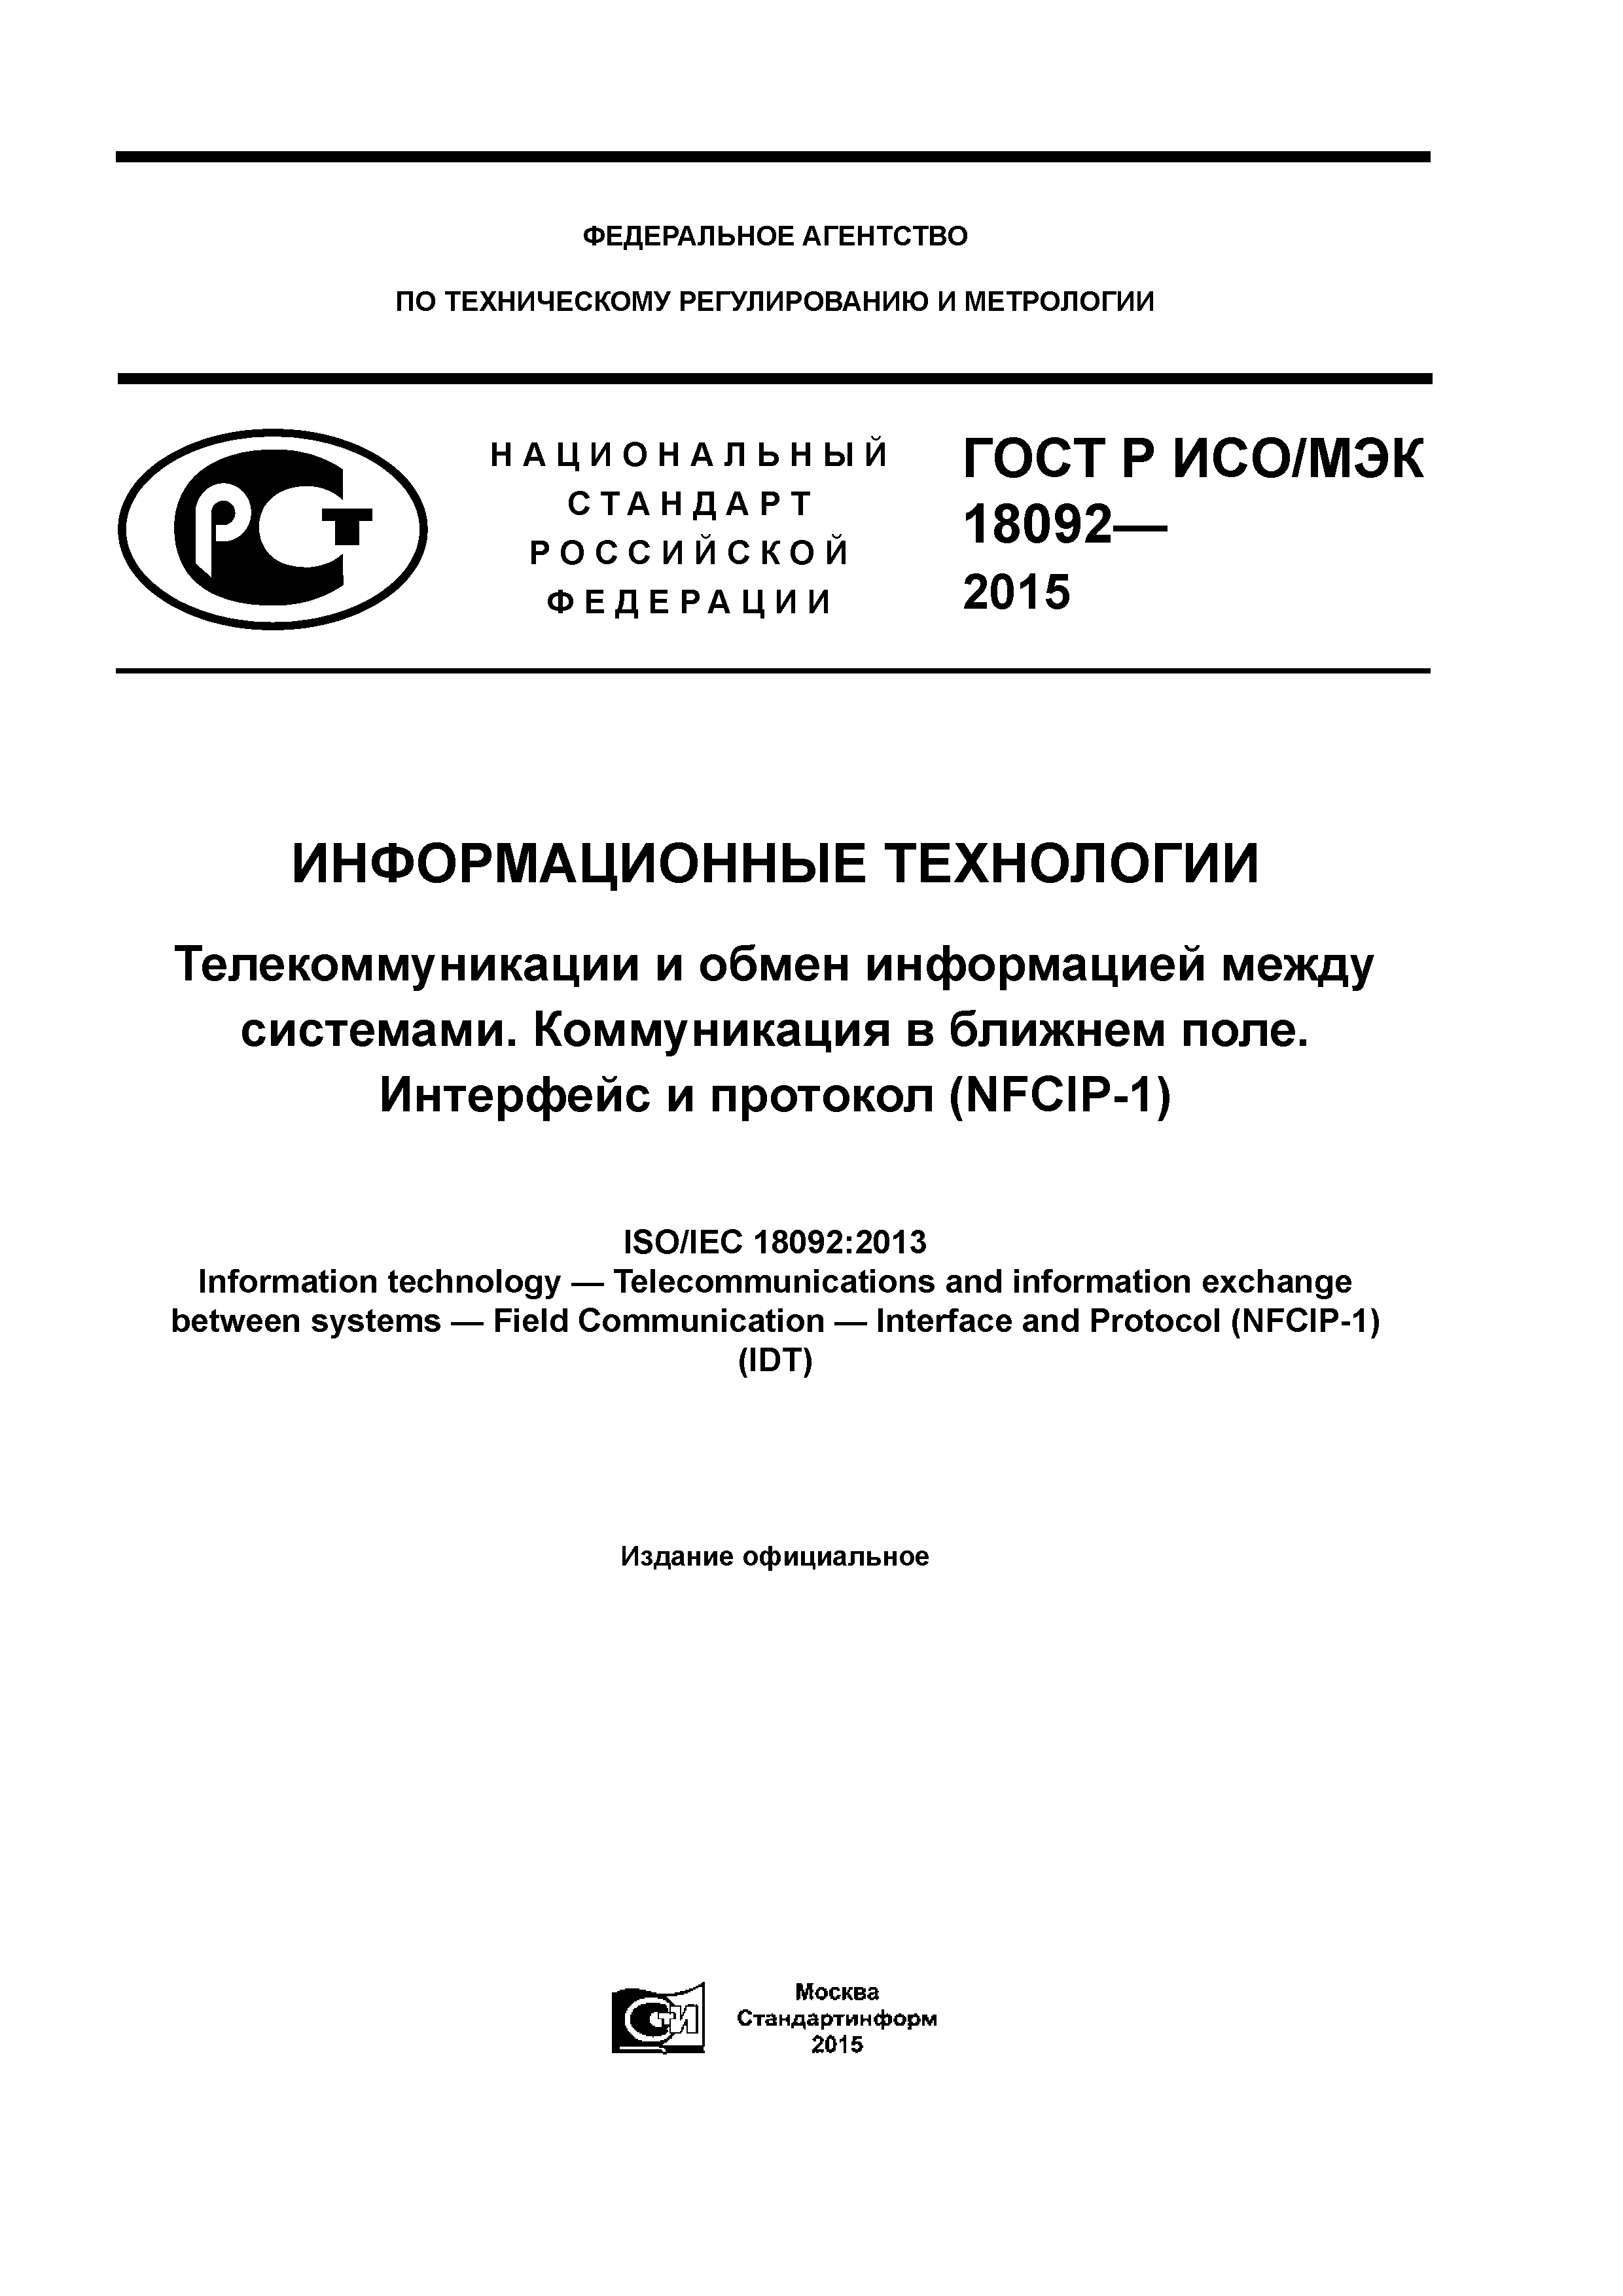 ГОСТ Р ИСО/МЭК 18092-2015